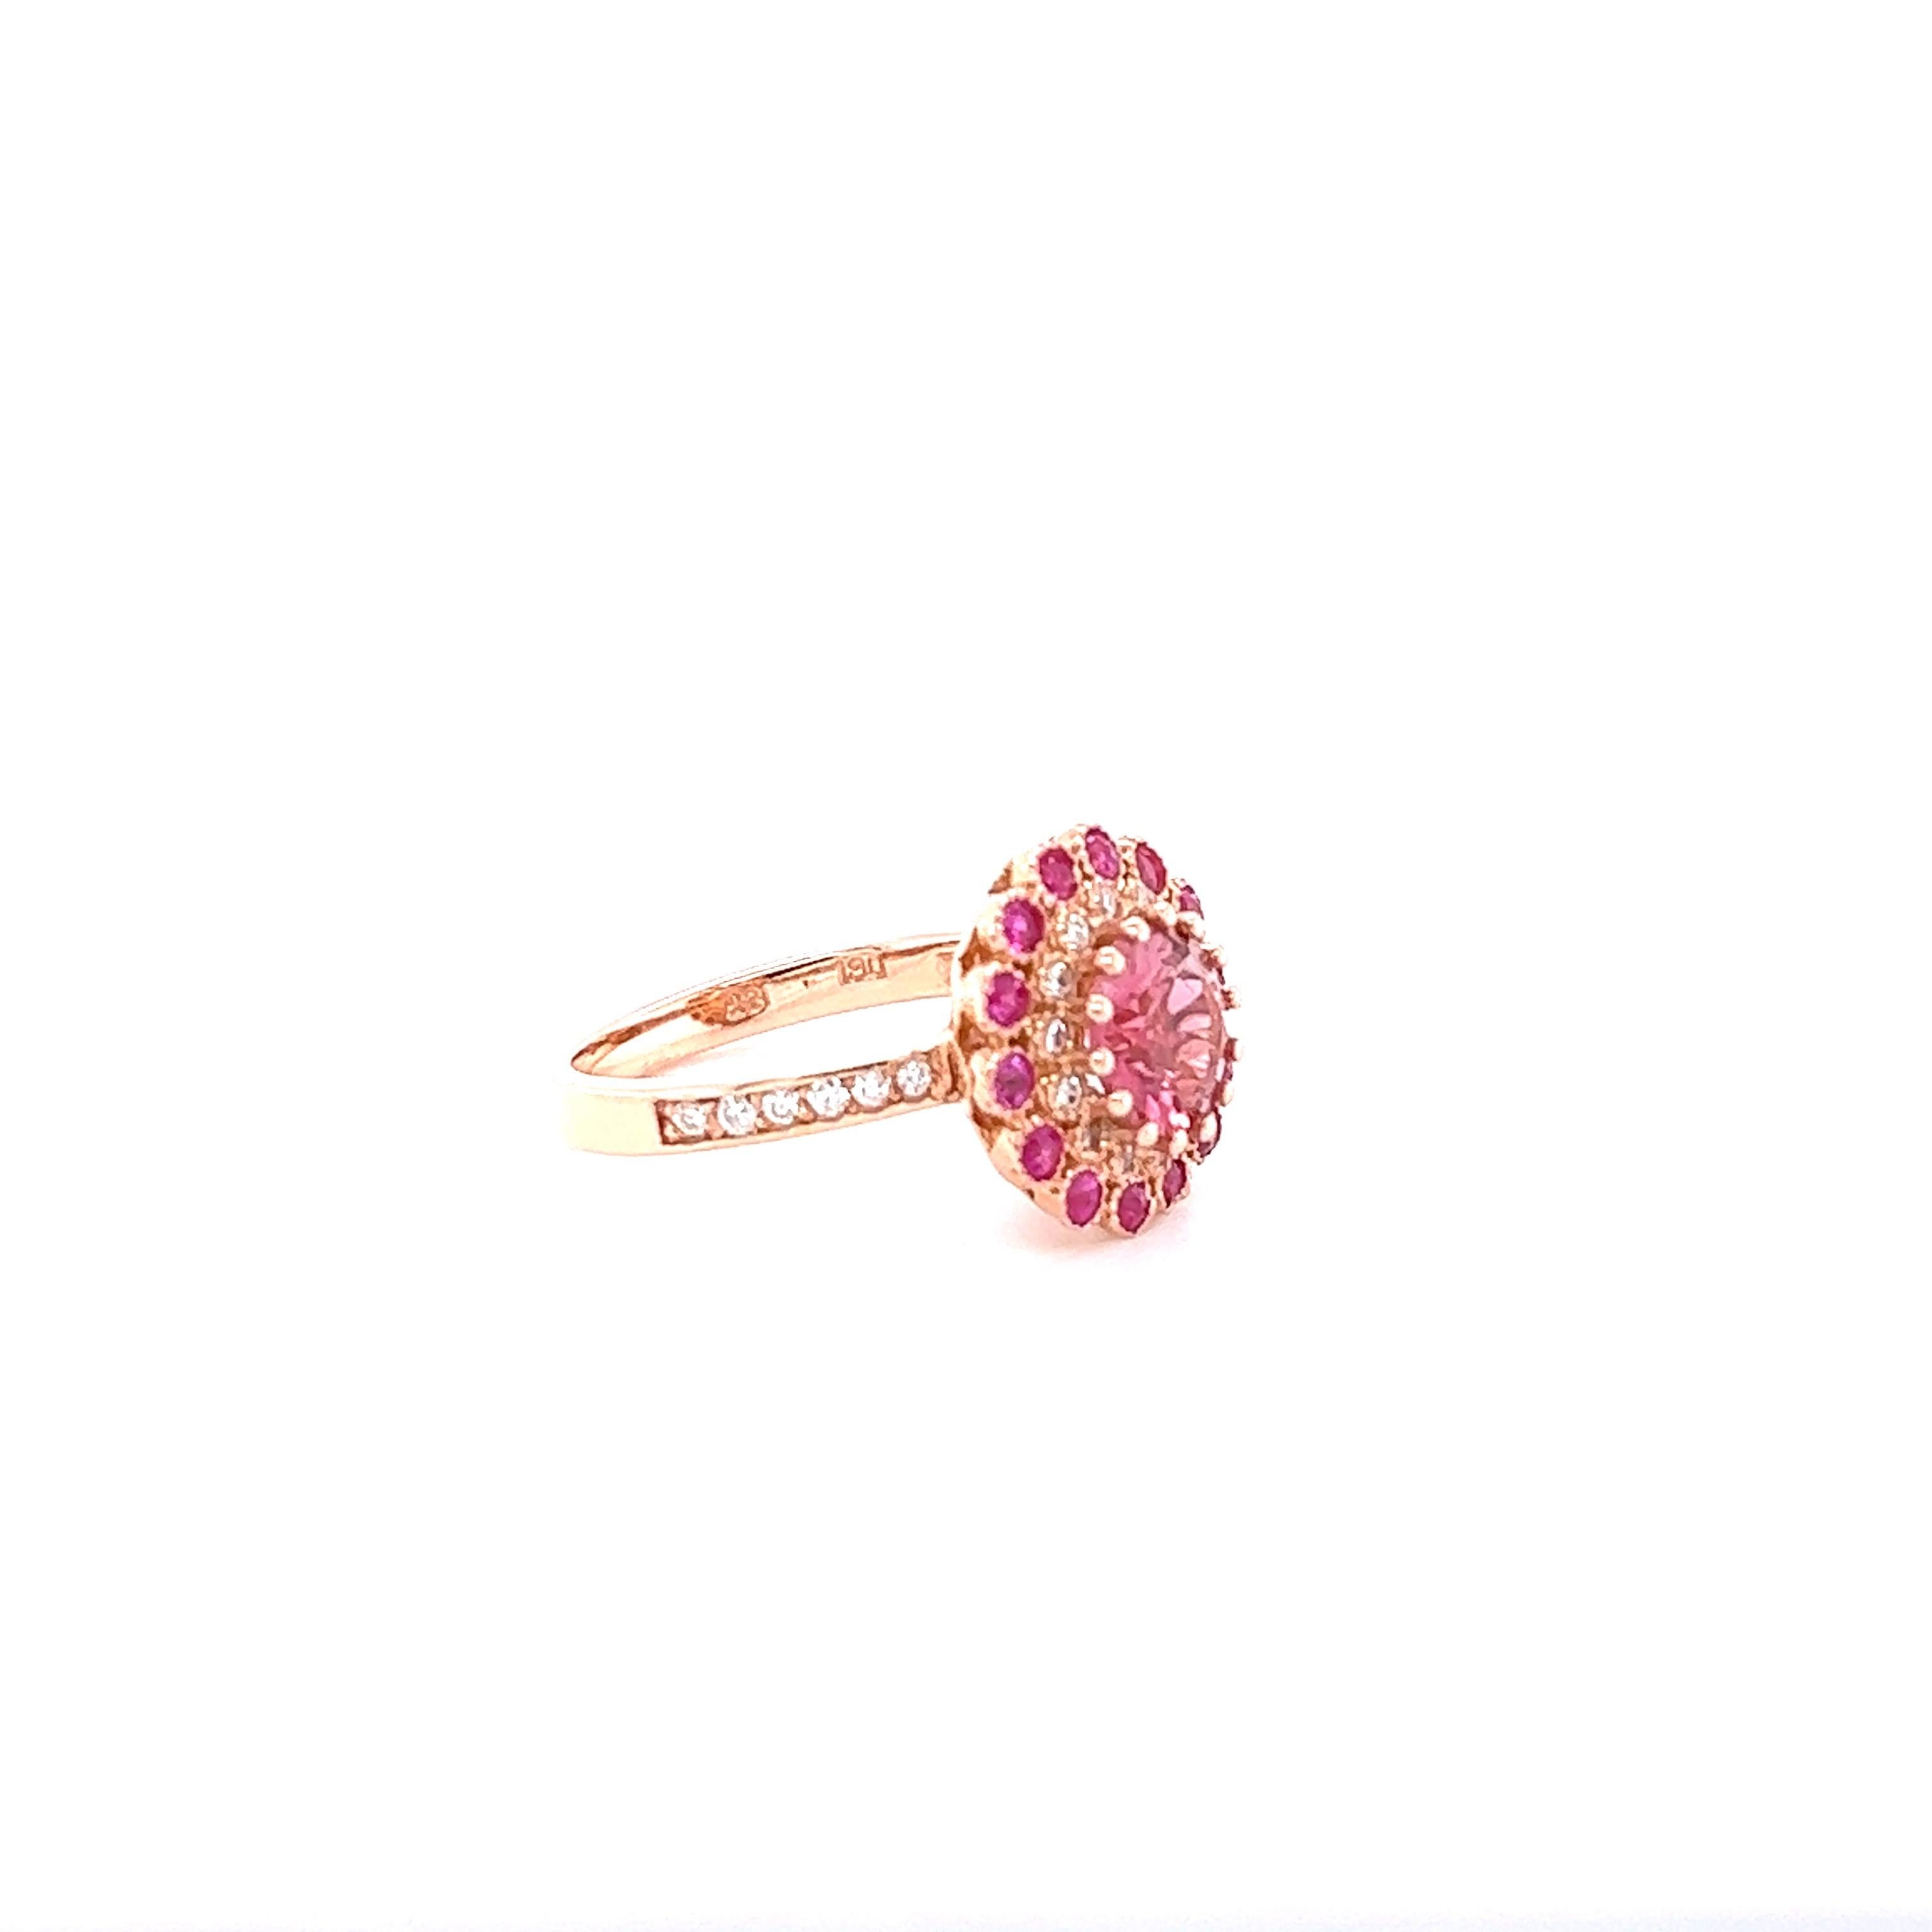 Esta belleza tiene una Turmalina Rosa de talla redonda engastada en el centro del anillo que pesa 1,79 quilates y mide 8 mm.  Está rodeada por 14 zafiros rosas talla redonda que pesan 0,54 quilates y 26 diamantes talla redonda que pesan 0,27